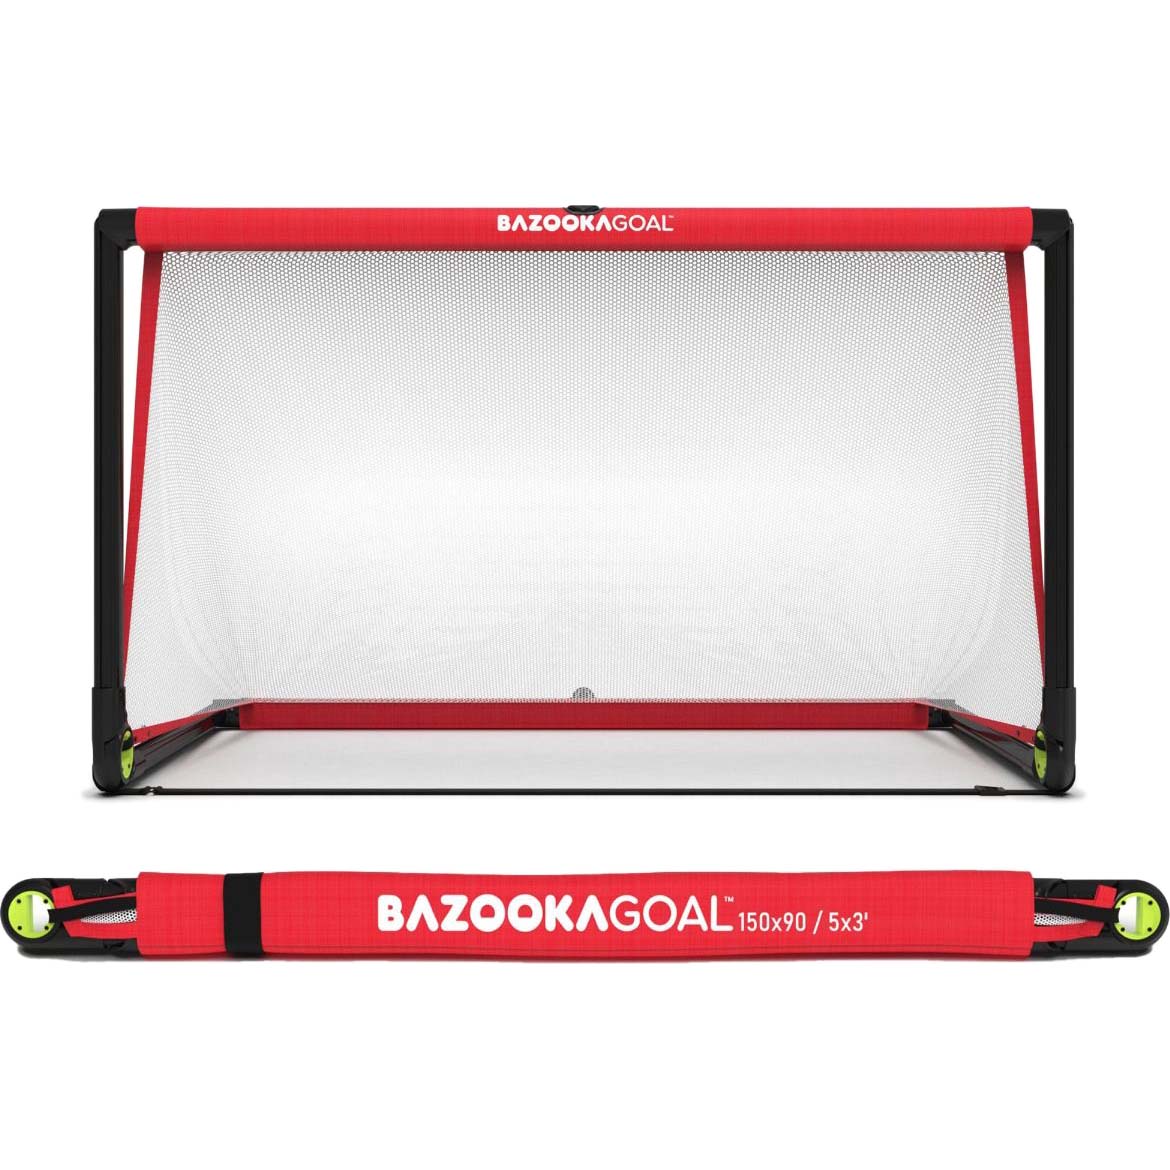 BazookaGoal Original 150x90cm - Black/Red